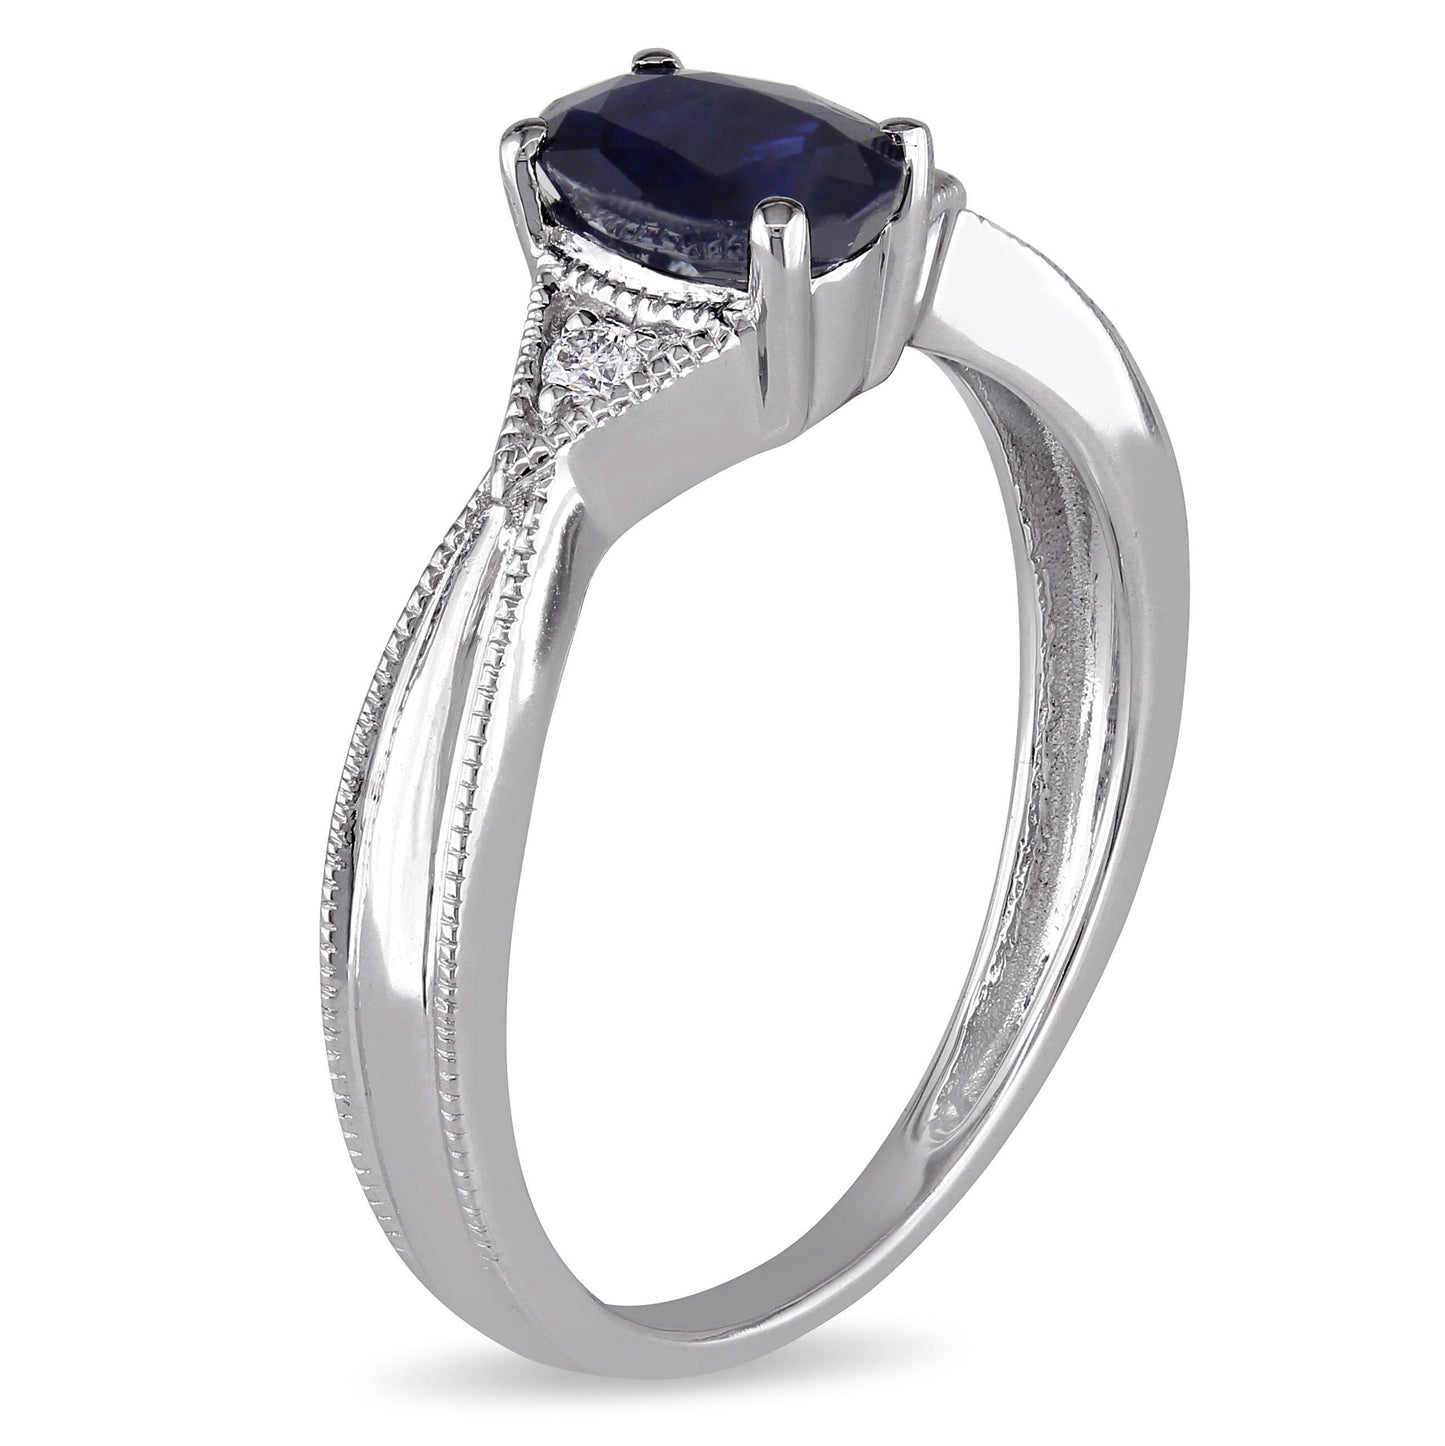 Oval Blue Sapphire & Diamond Ring